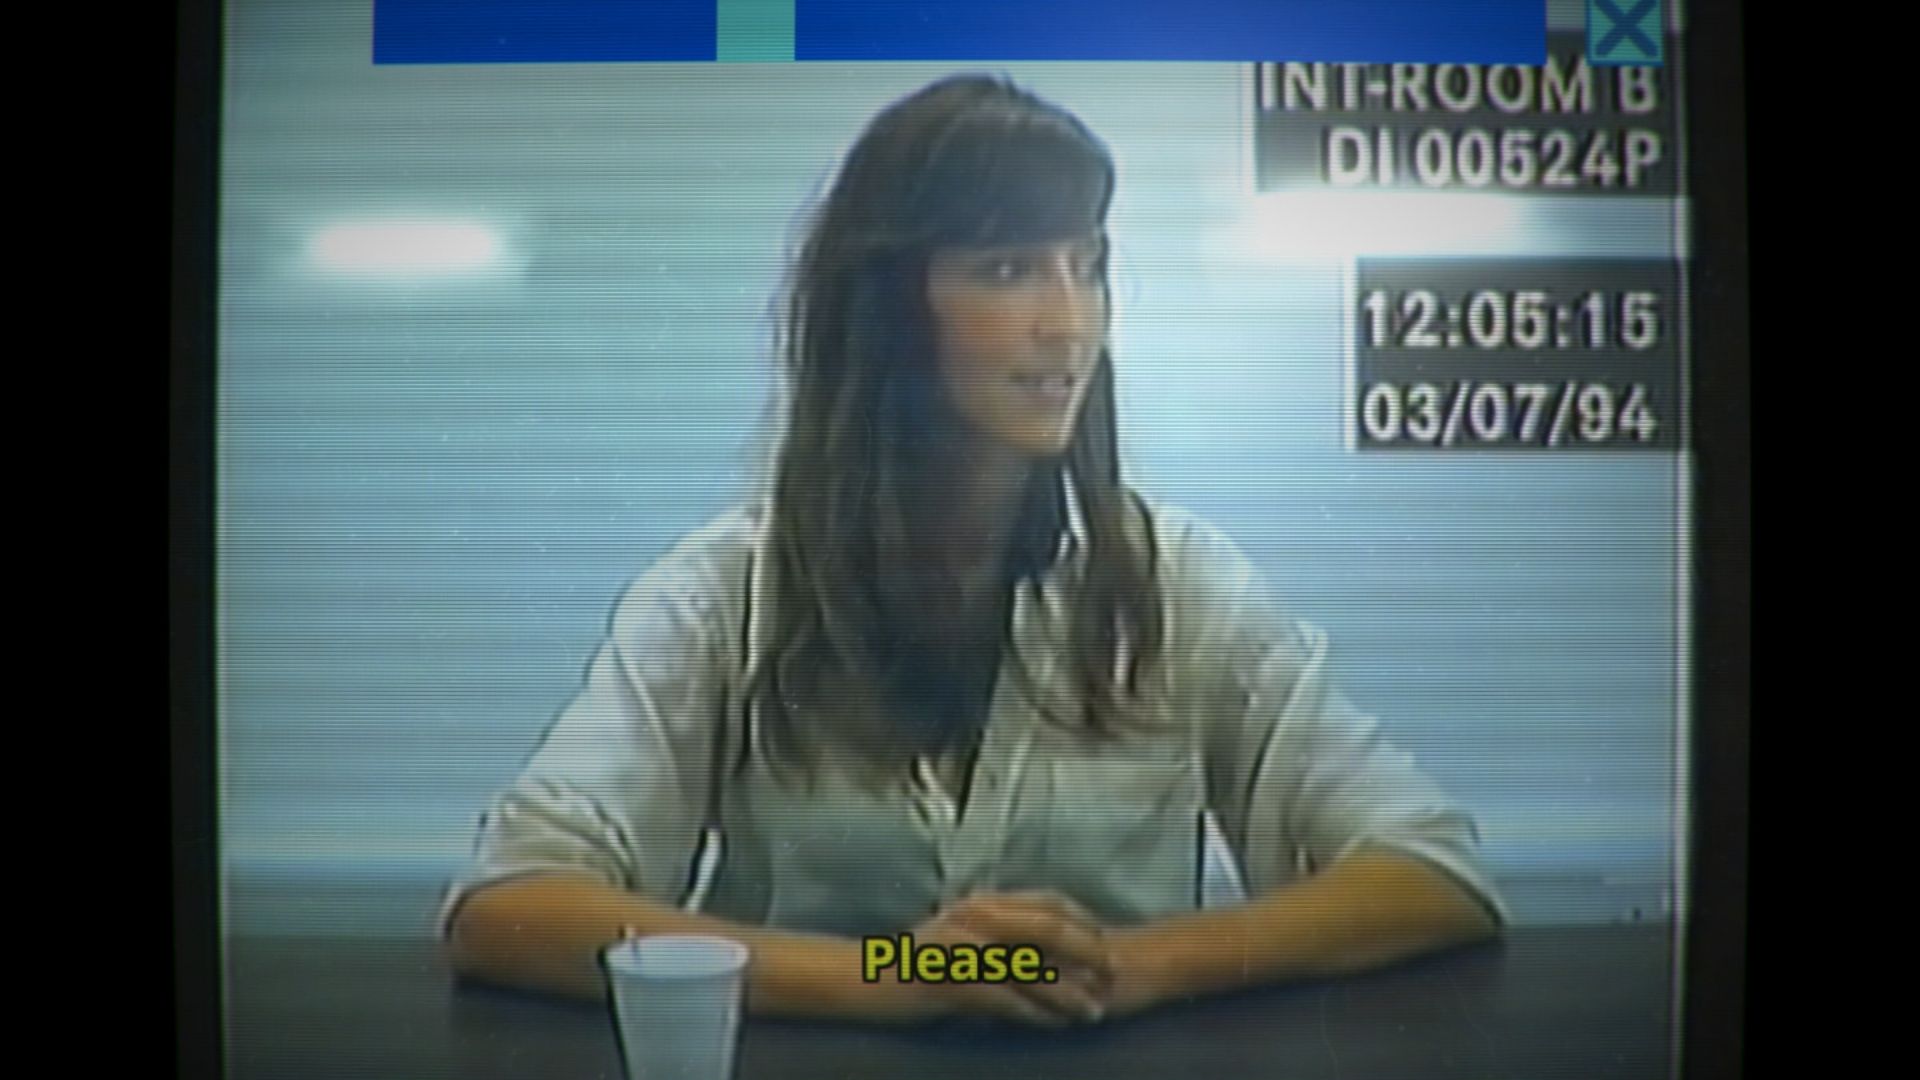 सीआरटी टीव्हीवर दर्शविलेल्या पोलिस मुलाखतीत एक महिला